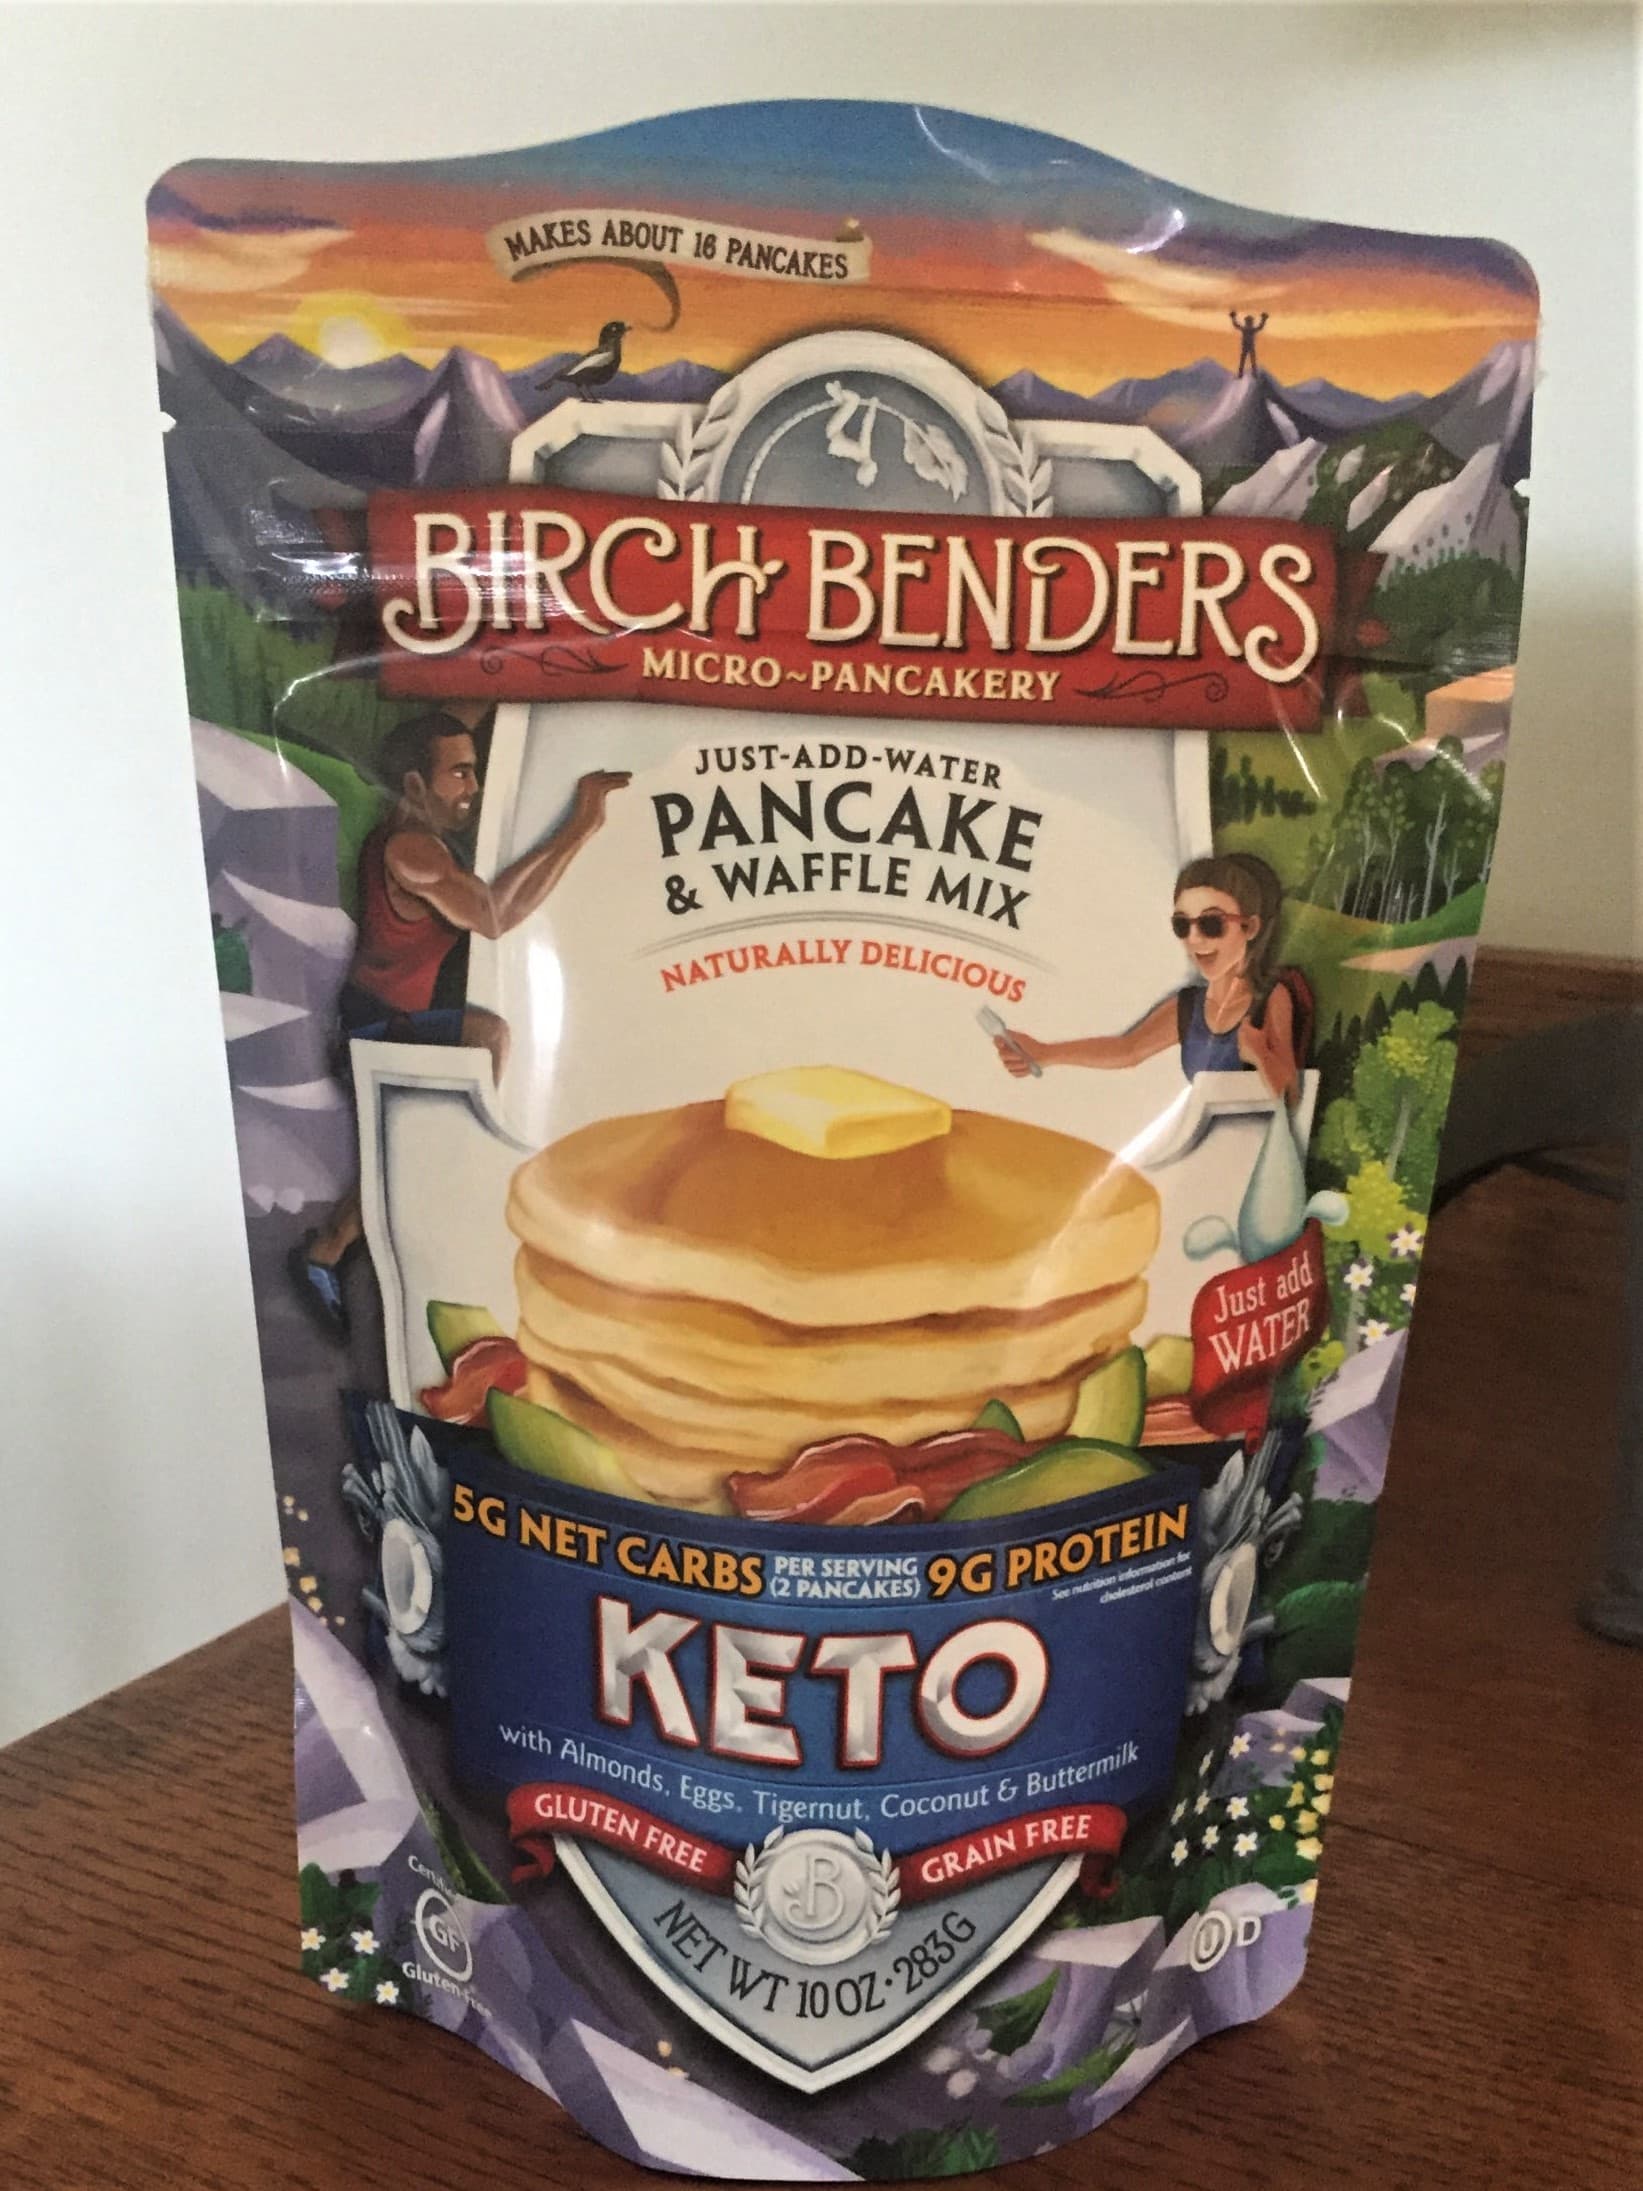 Birch Benders Keto pancake and waffle mix